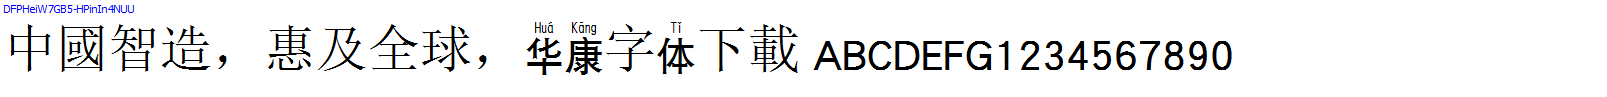 華康字體DFPHeiW7GB5-HPinIn4NUU.TTF